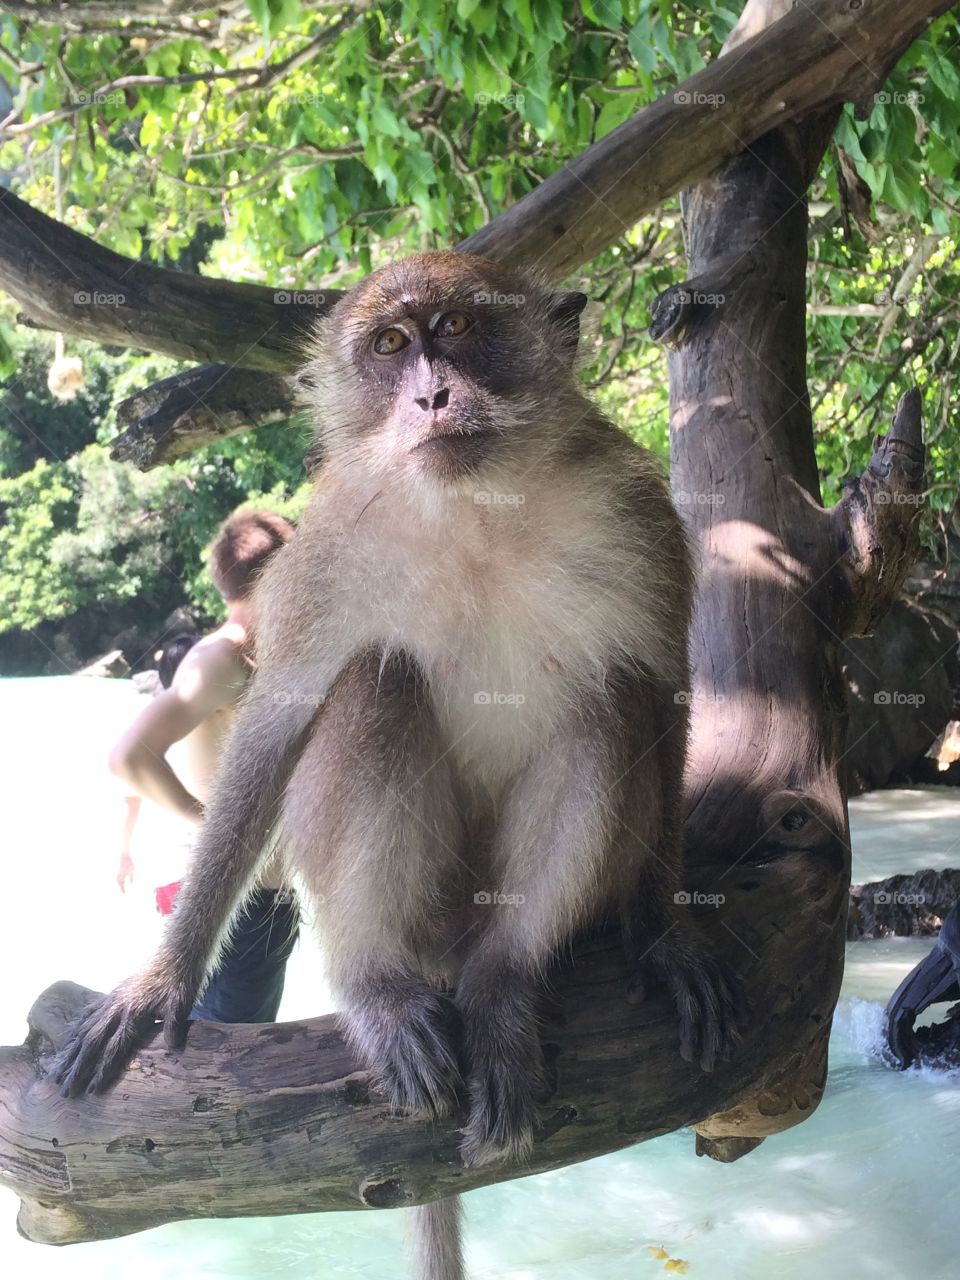 Monkey in Thailand 